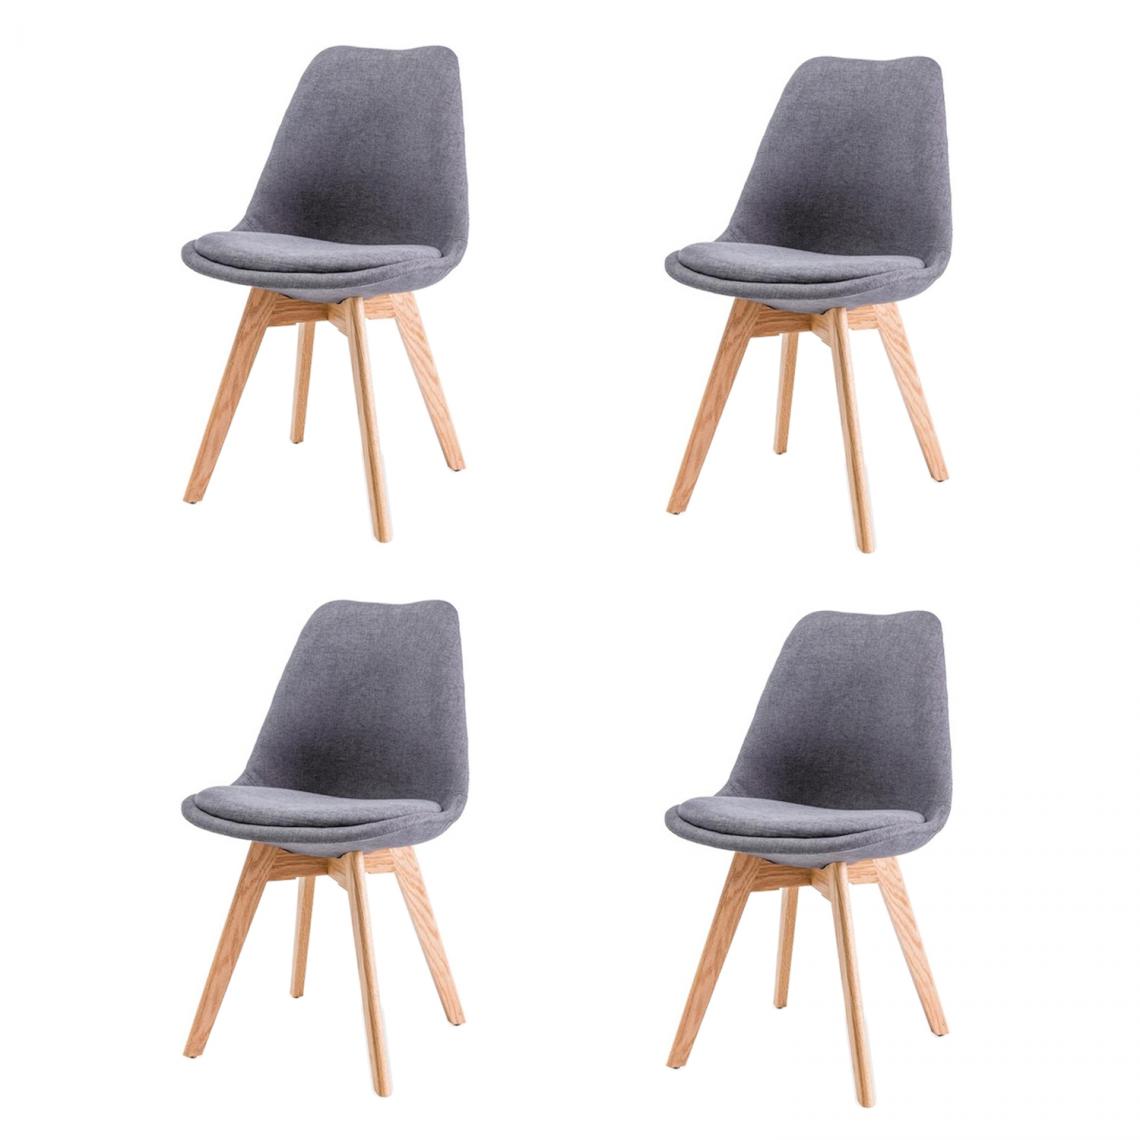 Hucoco - LEONIE - Lot de 4 chaises modernes avec pieds en bois - Dimensions : 86x52x48 cm - Style scandinave - Gris - Chaises